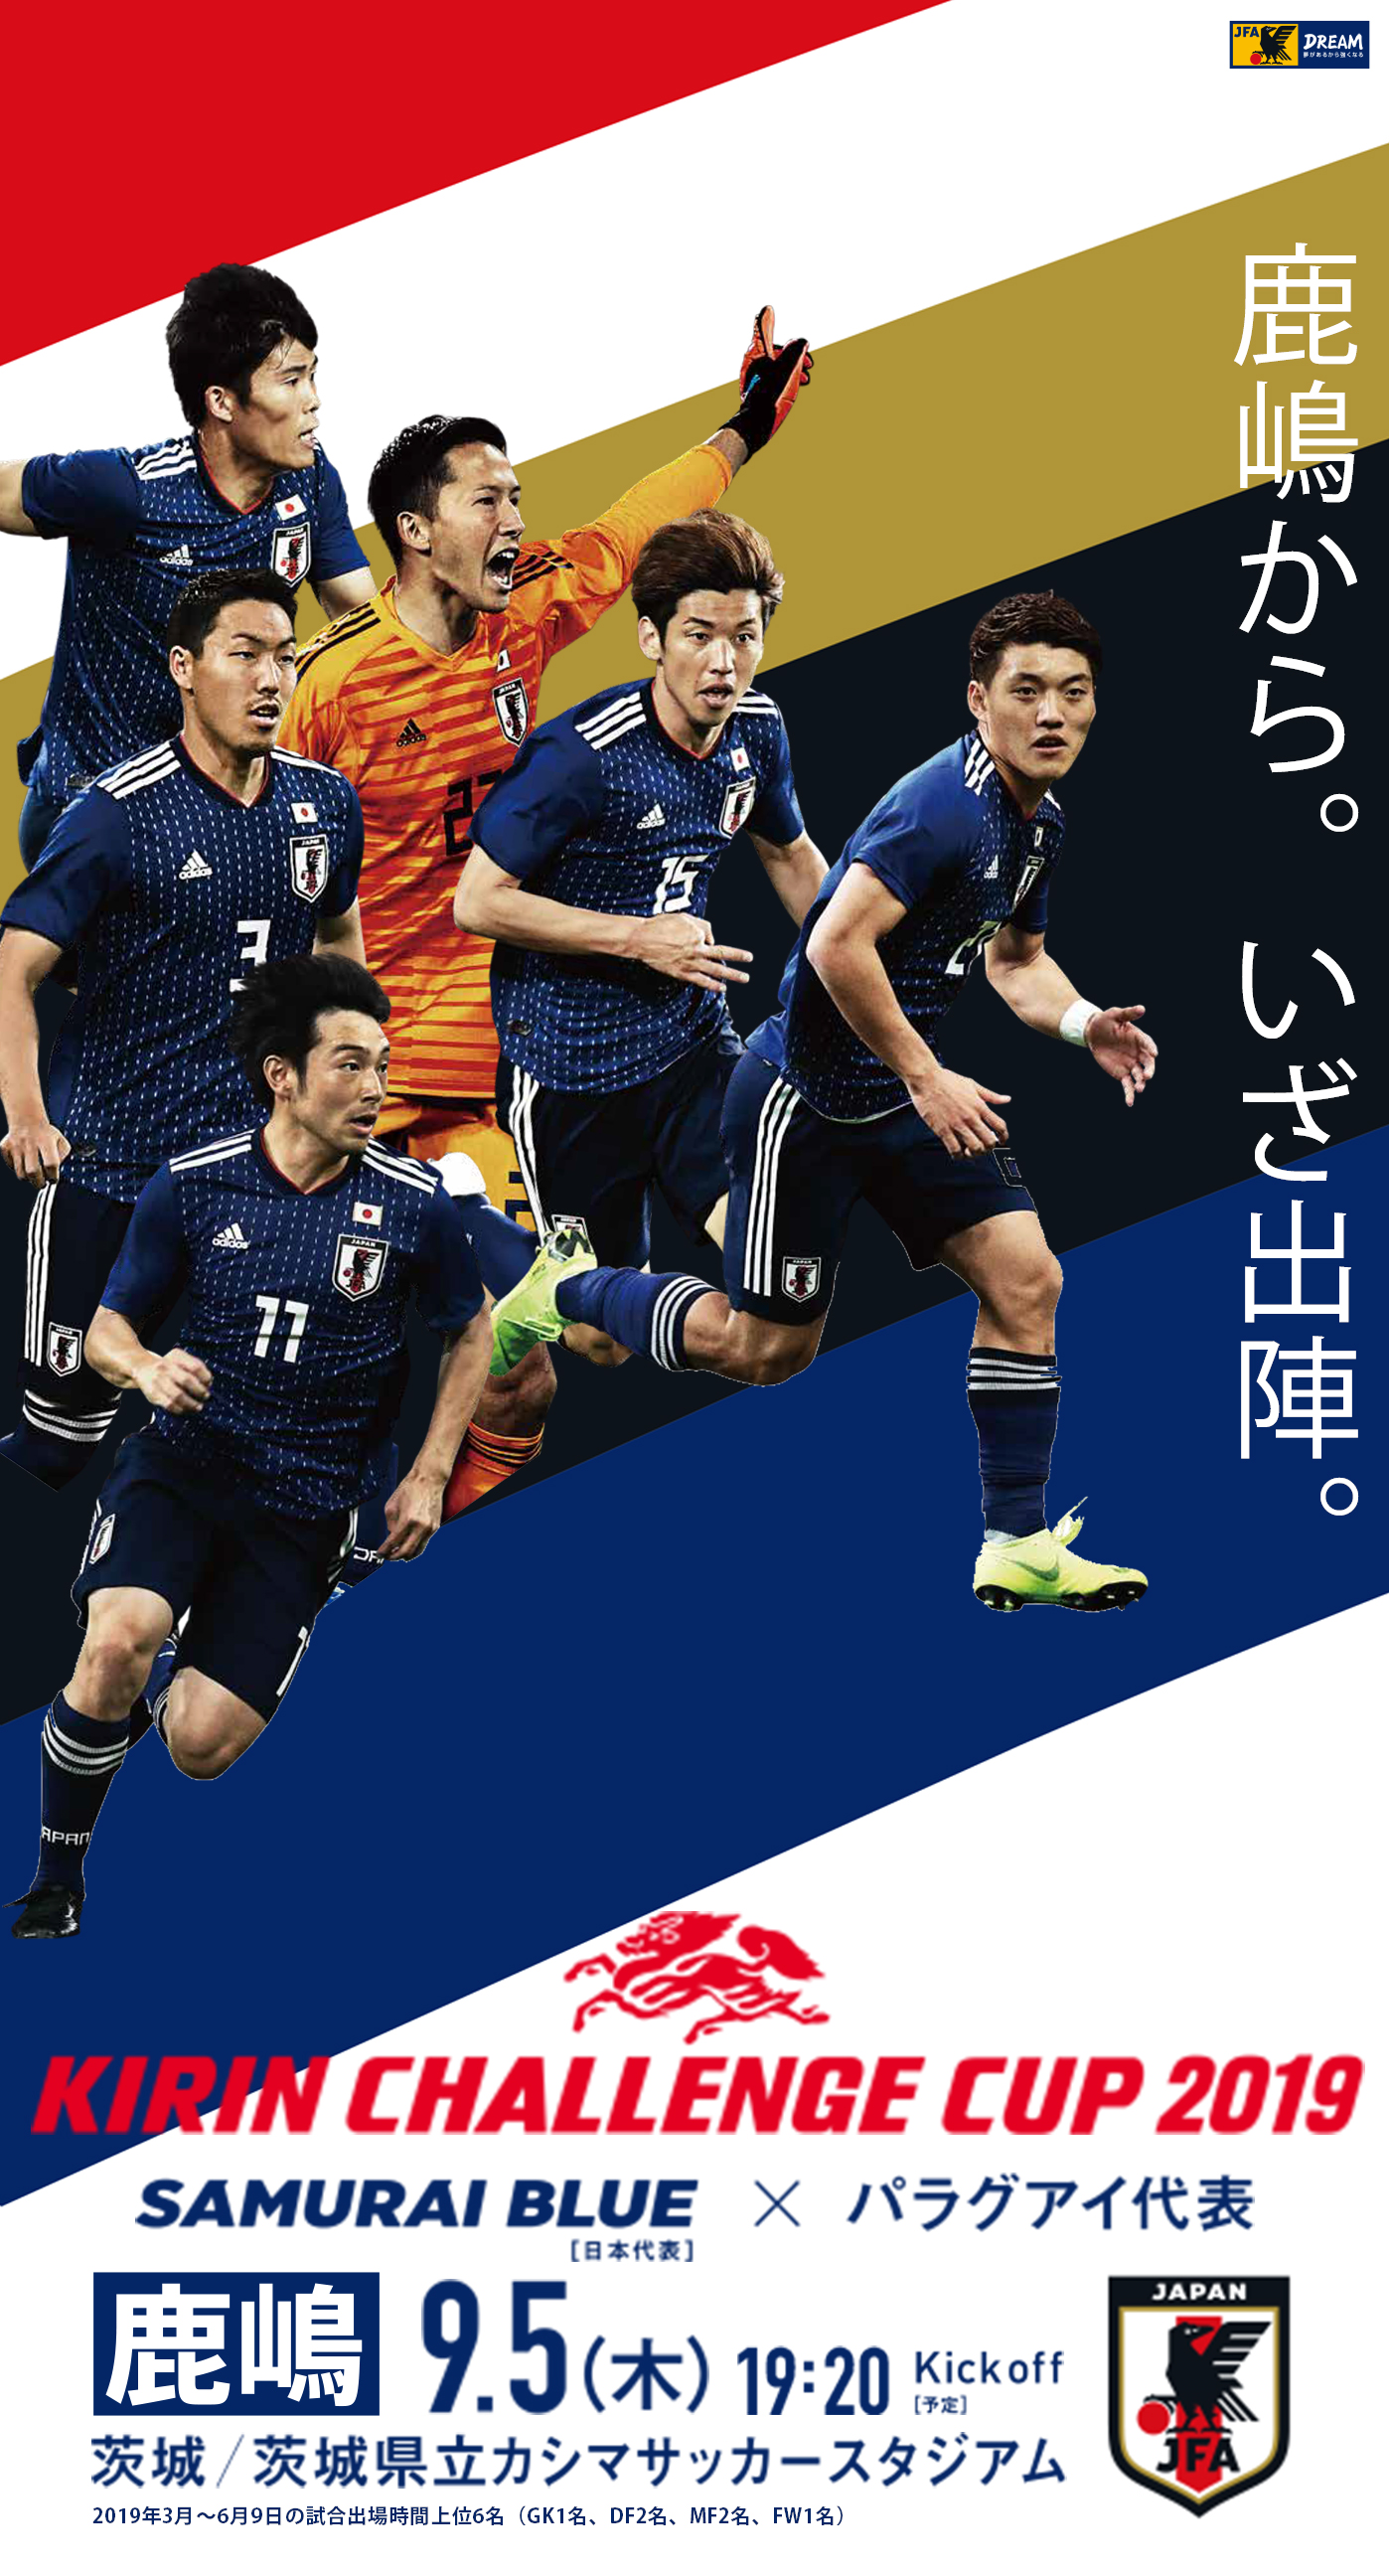 壁紙 ポスターダウンロード キリンチャレンジカップ19 9 5 Top Samurai Blue 日本代表 Jfa 日本サッカー協会